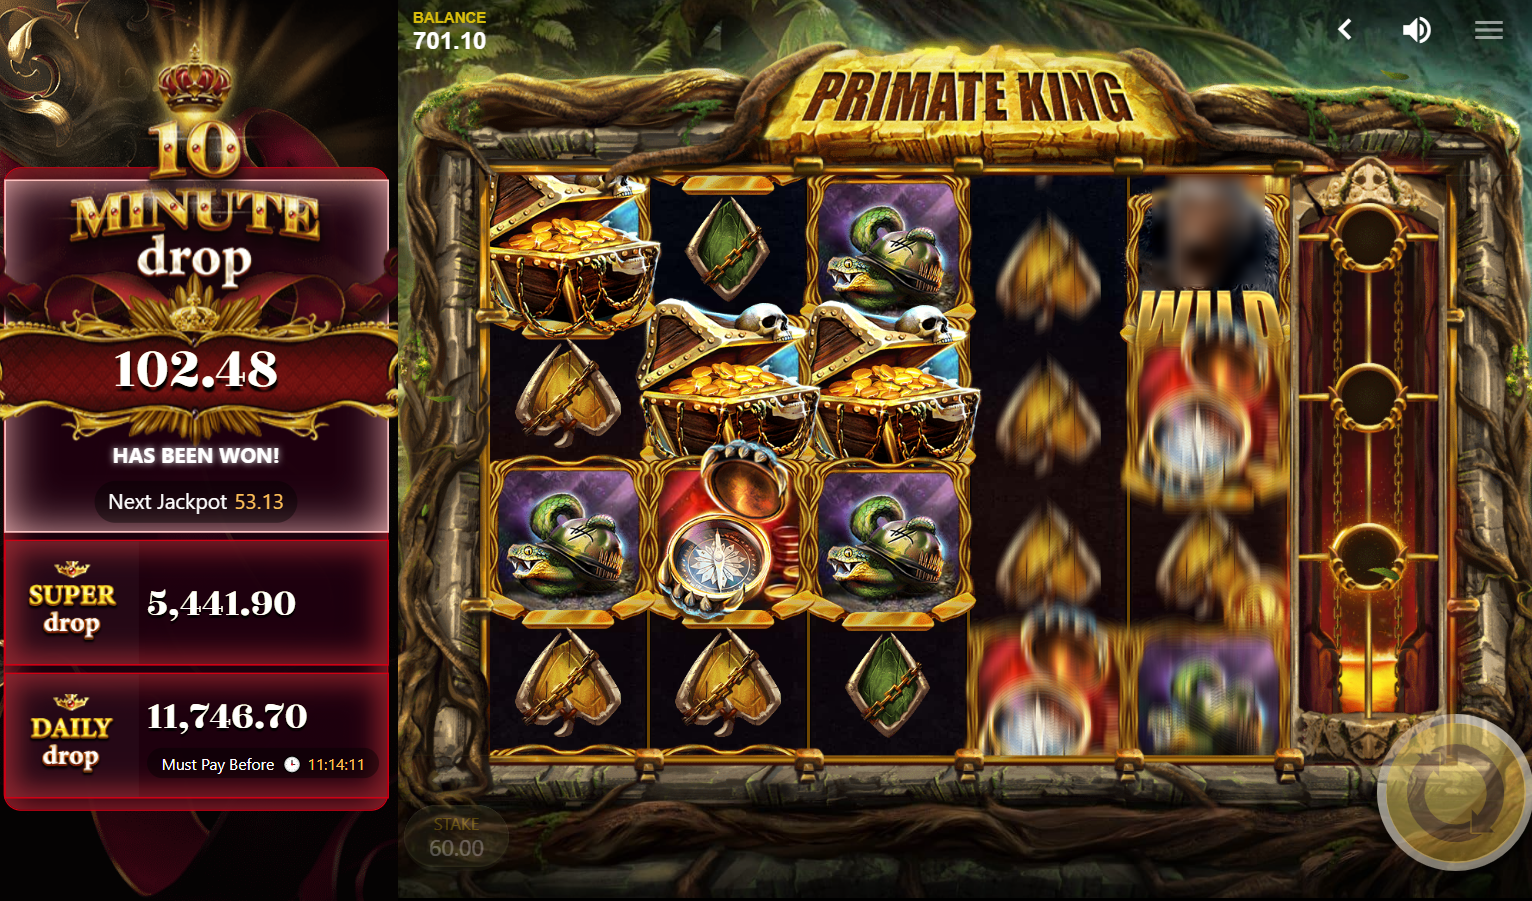 Primate King Slot Demo